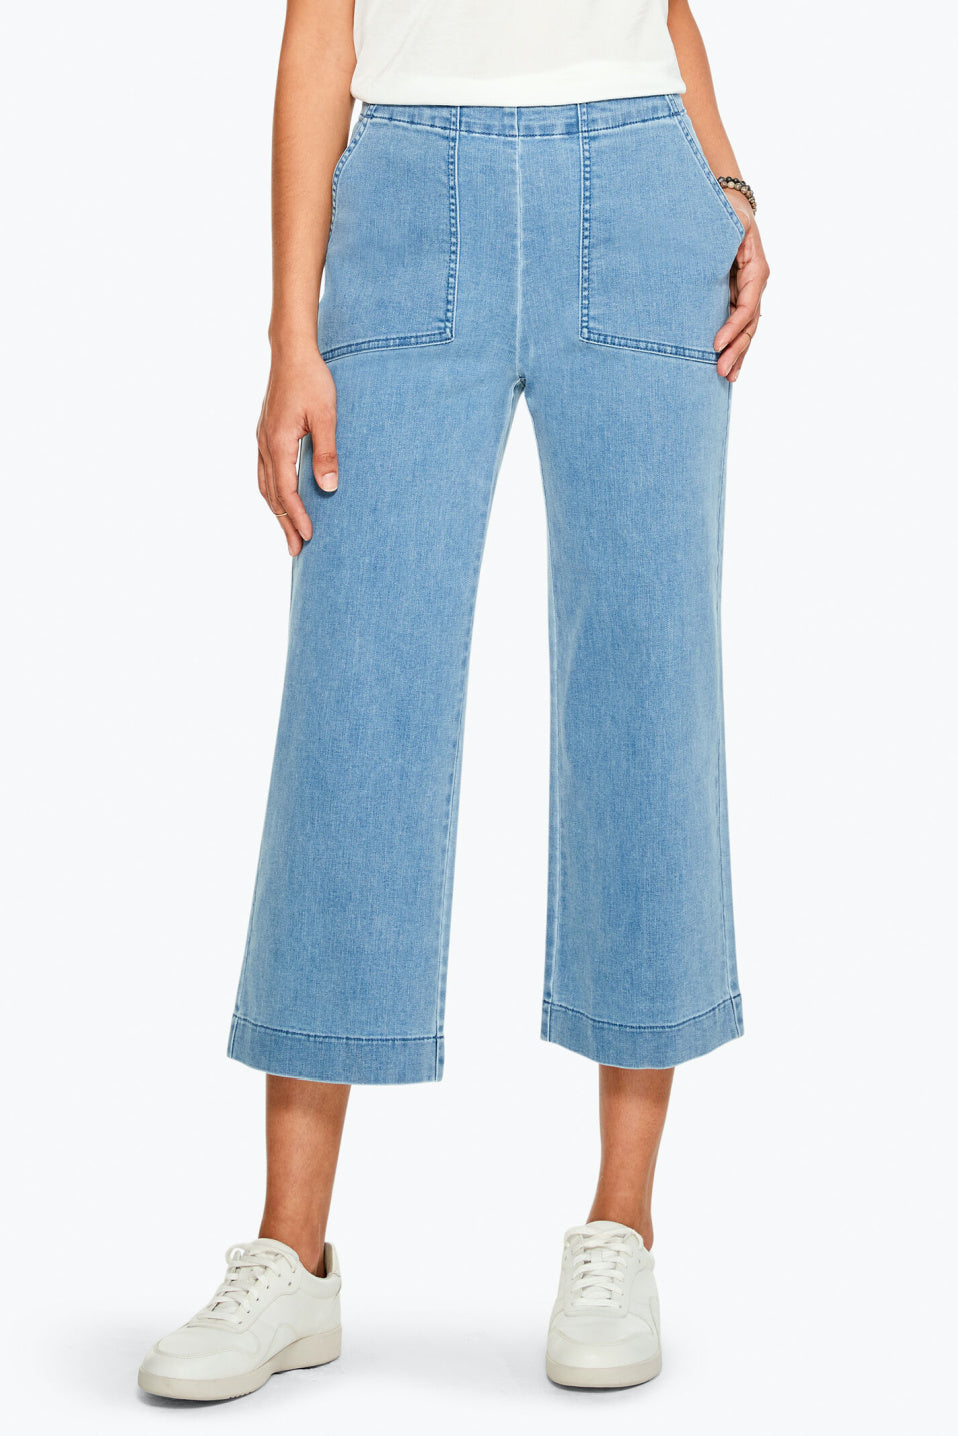 Capreze Ladies Wide Leg Denim Pants Ruched Flares Trousers Vacation Bottoms  Solid Color Jeans 